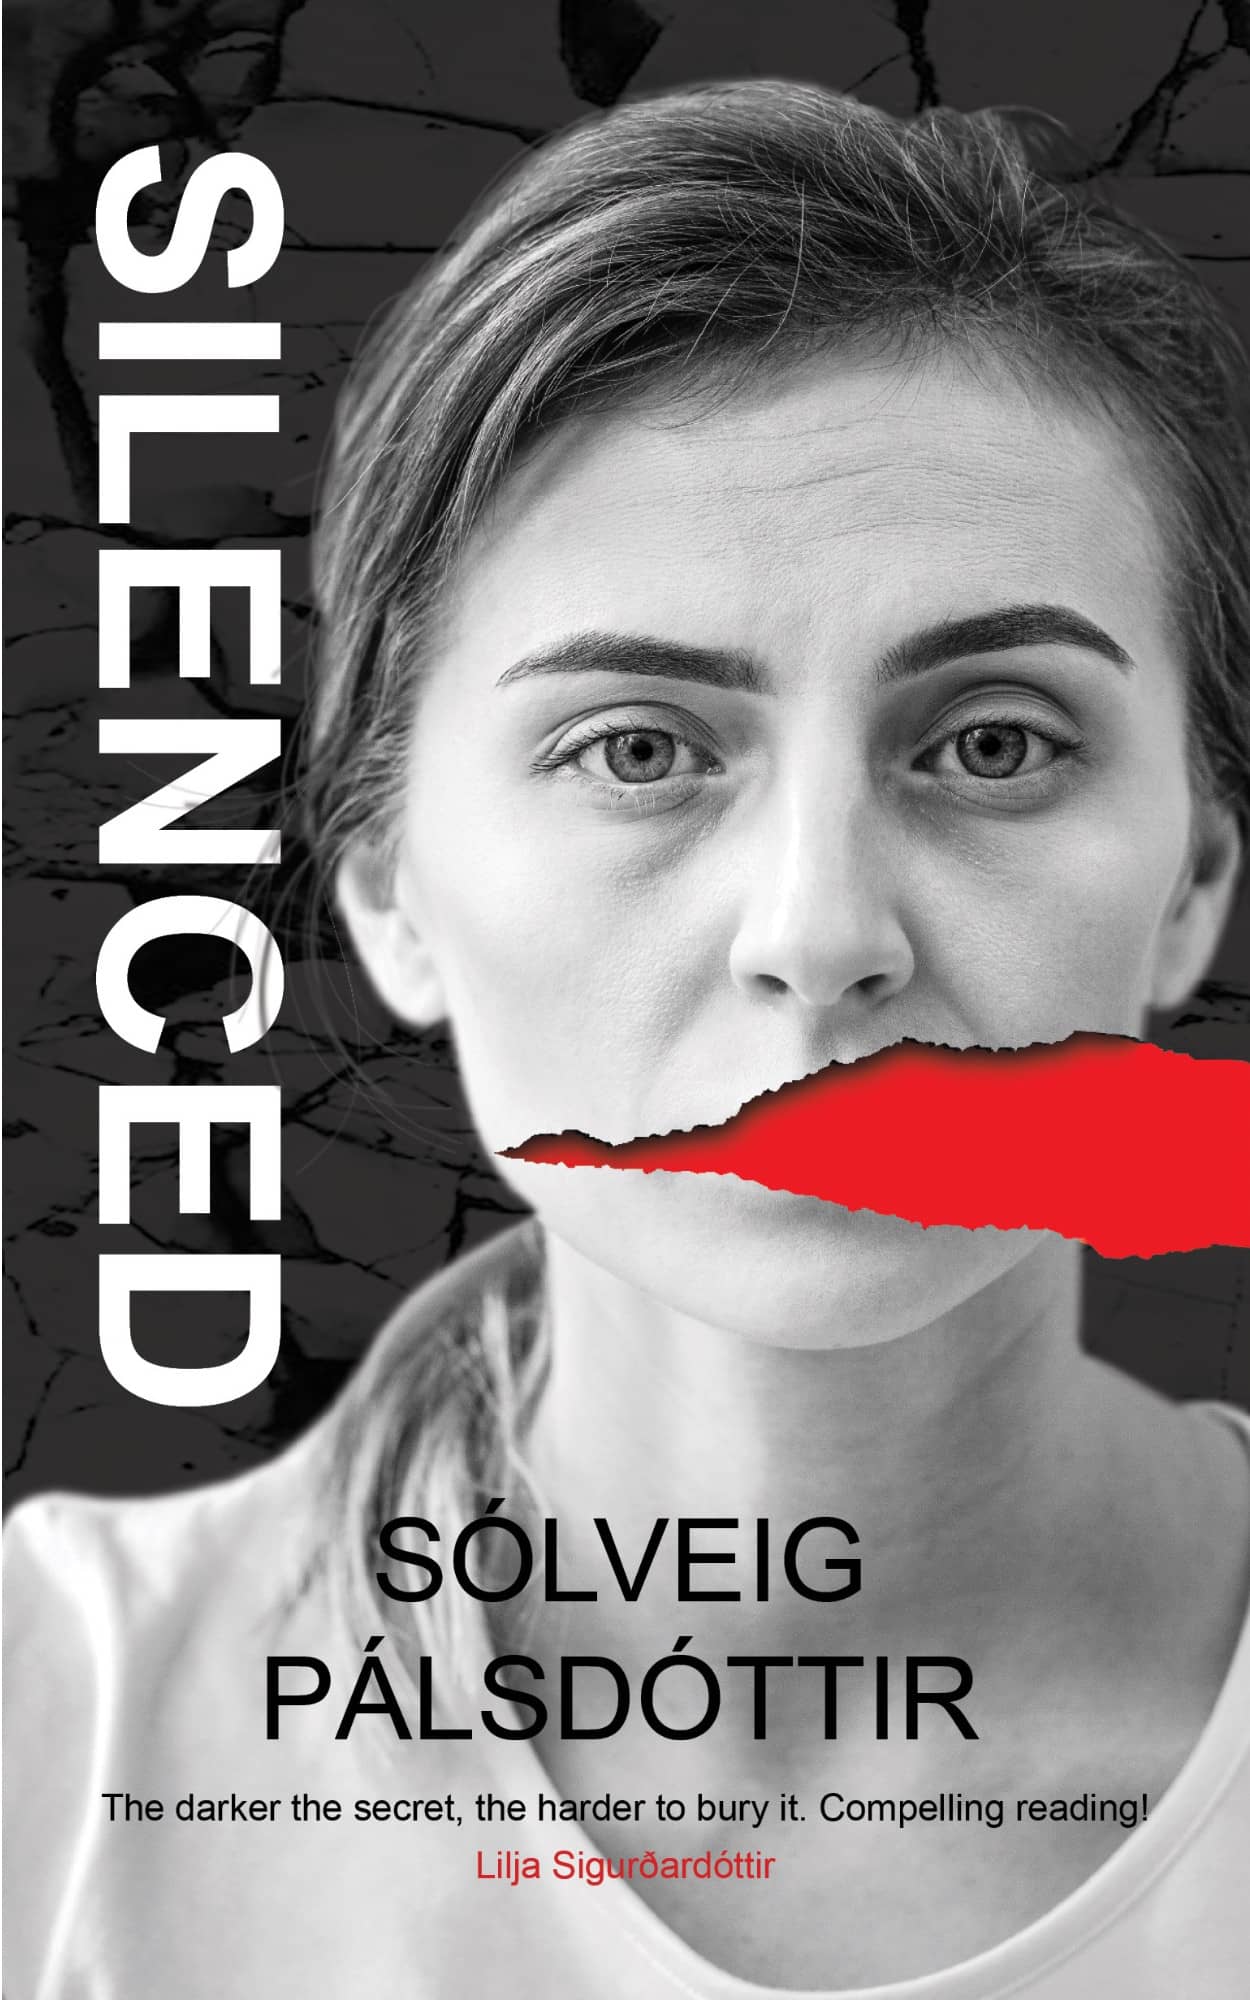 Silenced by Sólveig Pálsdóttir